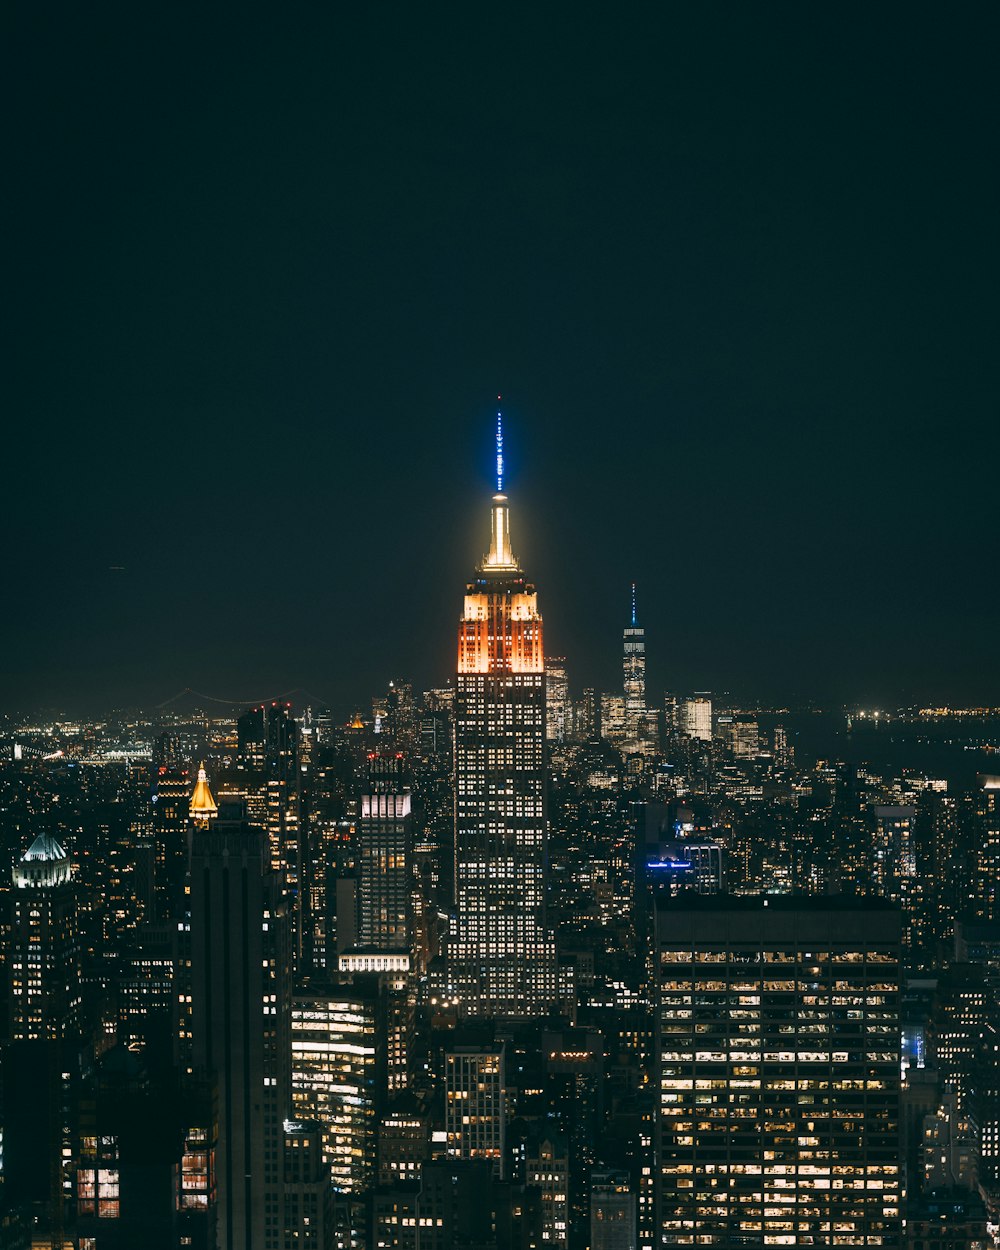 Una veduta di una città di notte dalla cima di un edificio